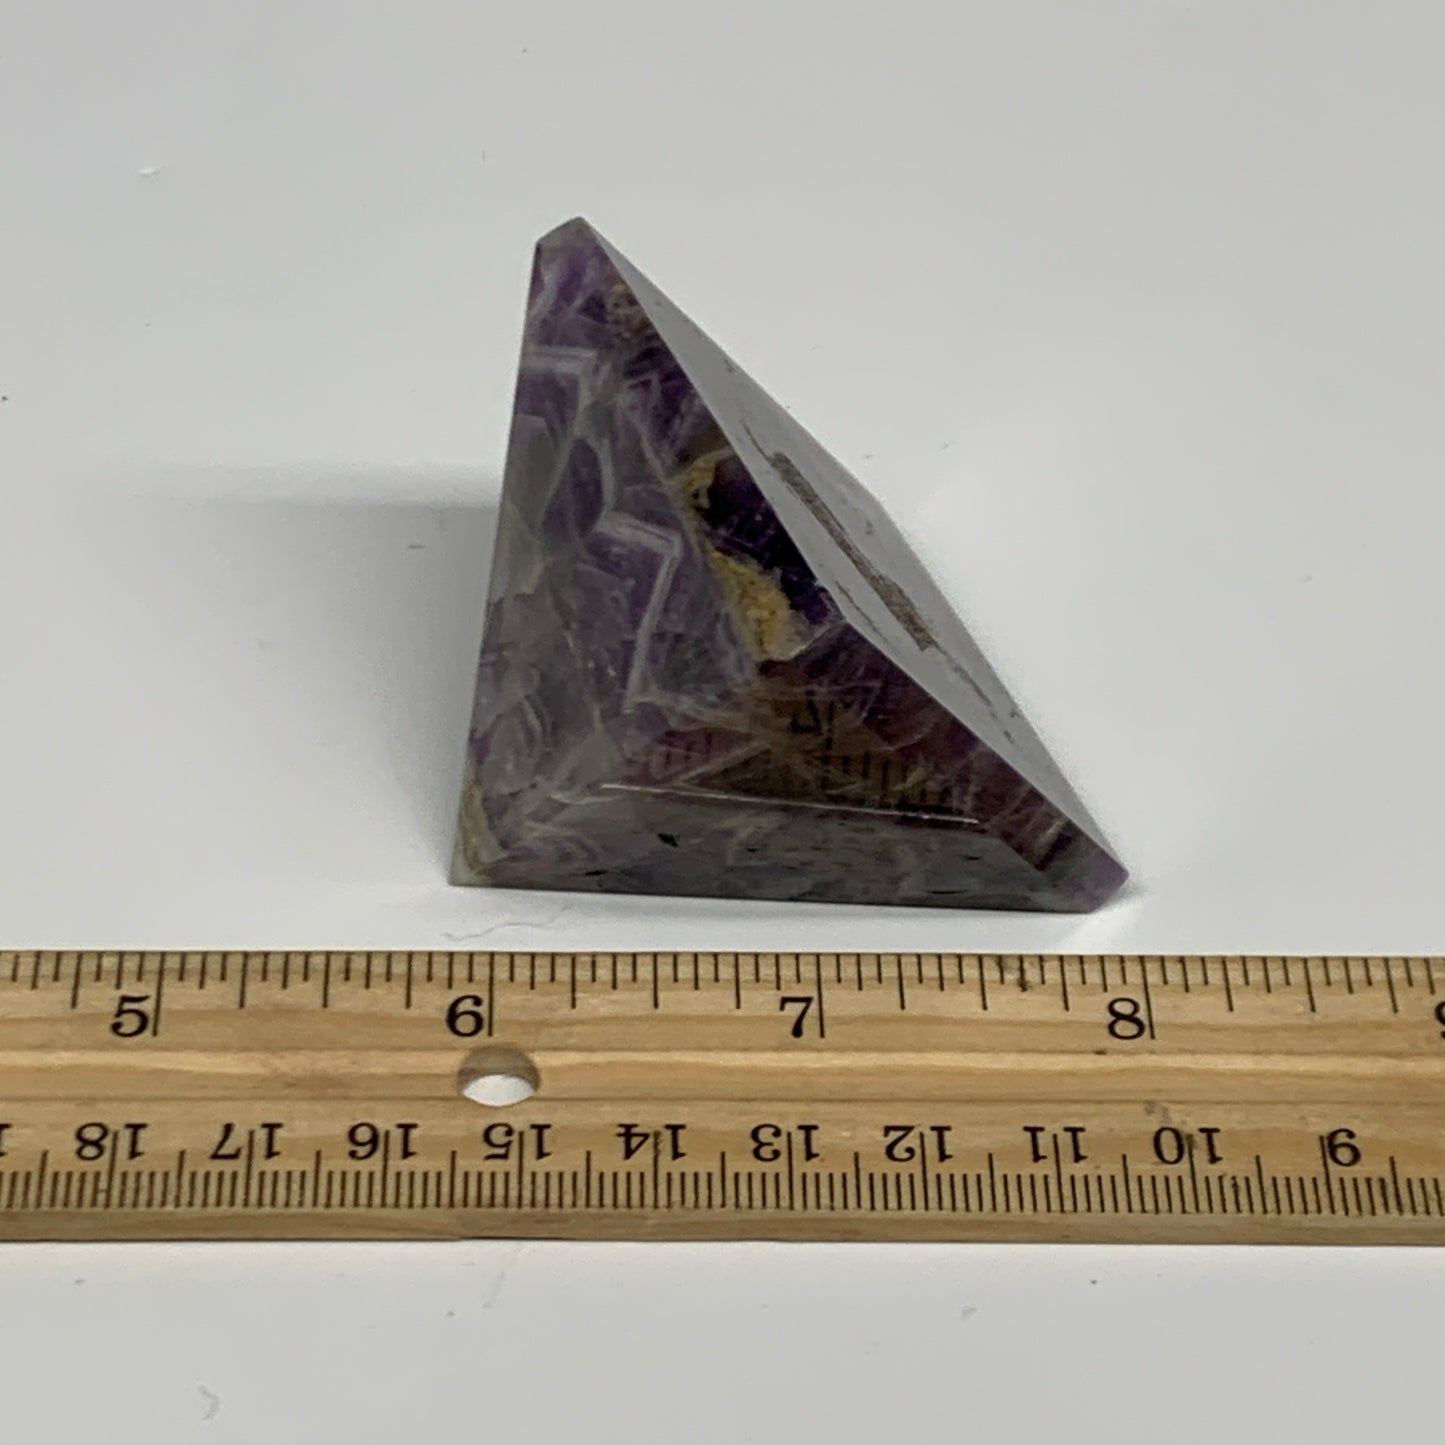 112.7g, 1.6"x2"x1.9", Natural Amethyst Pyramid Crystal Gemstone @Brazil, B30190